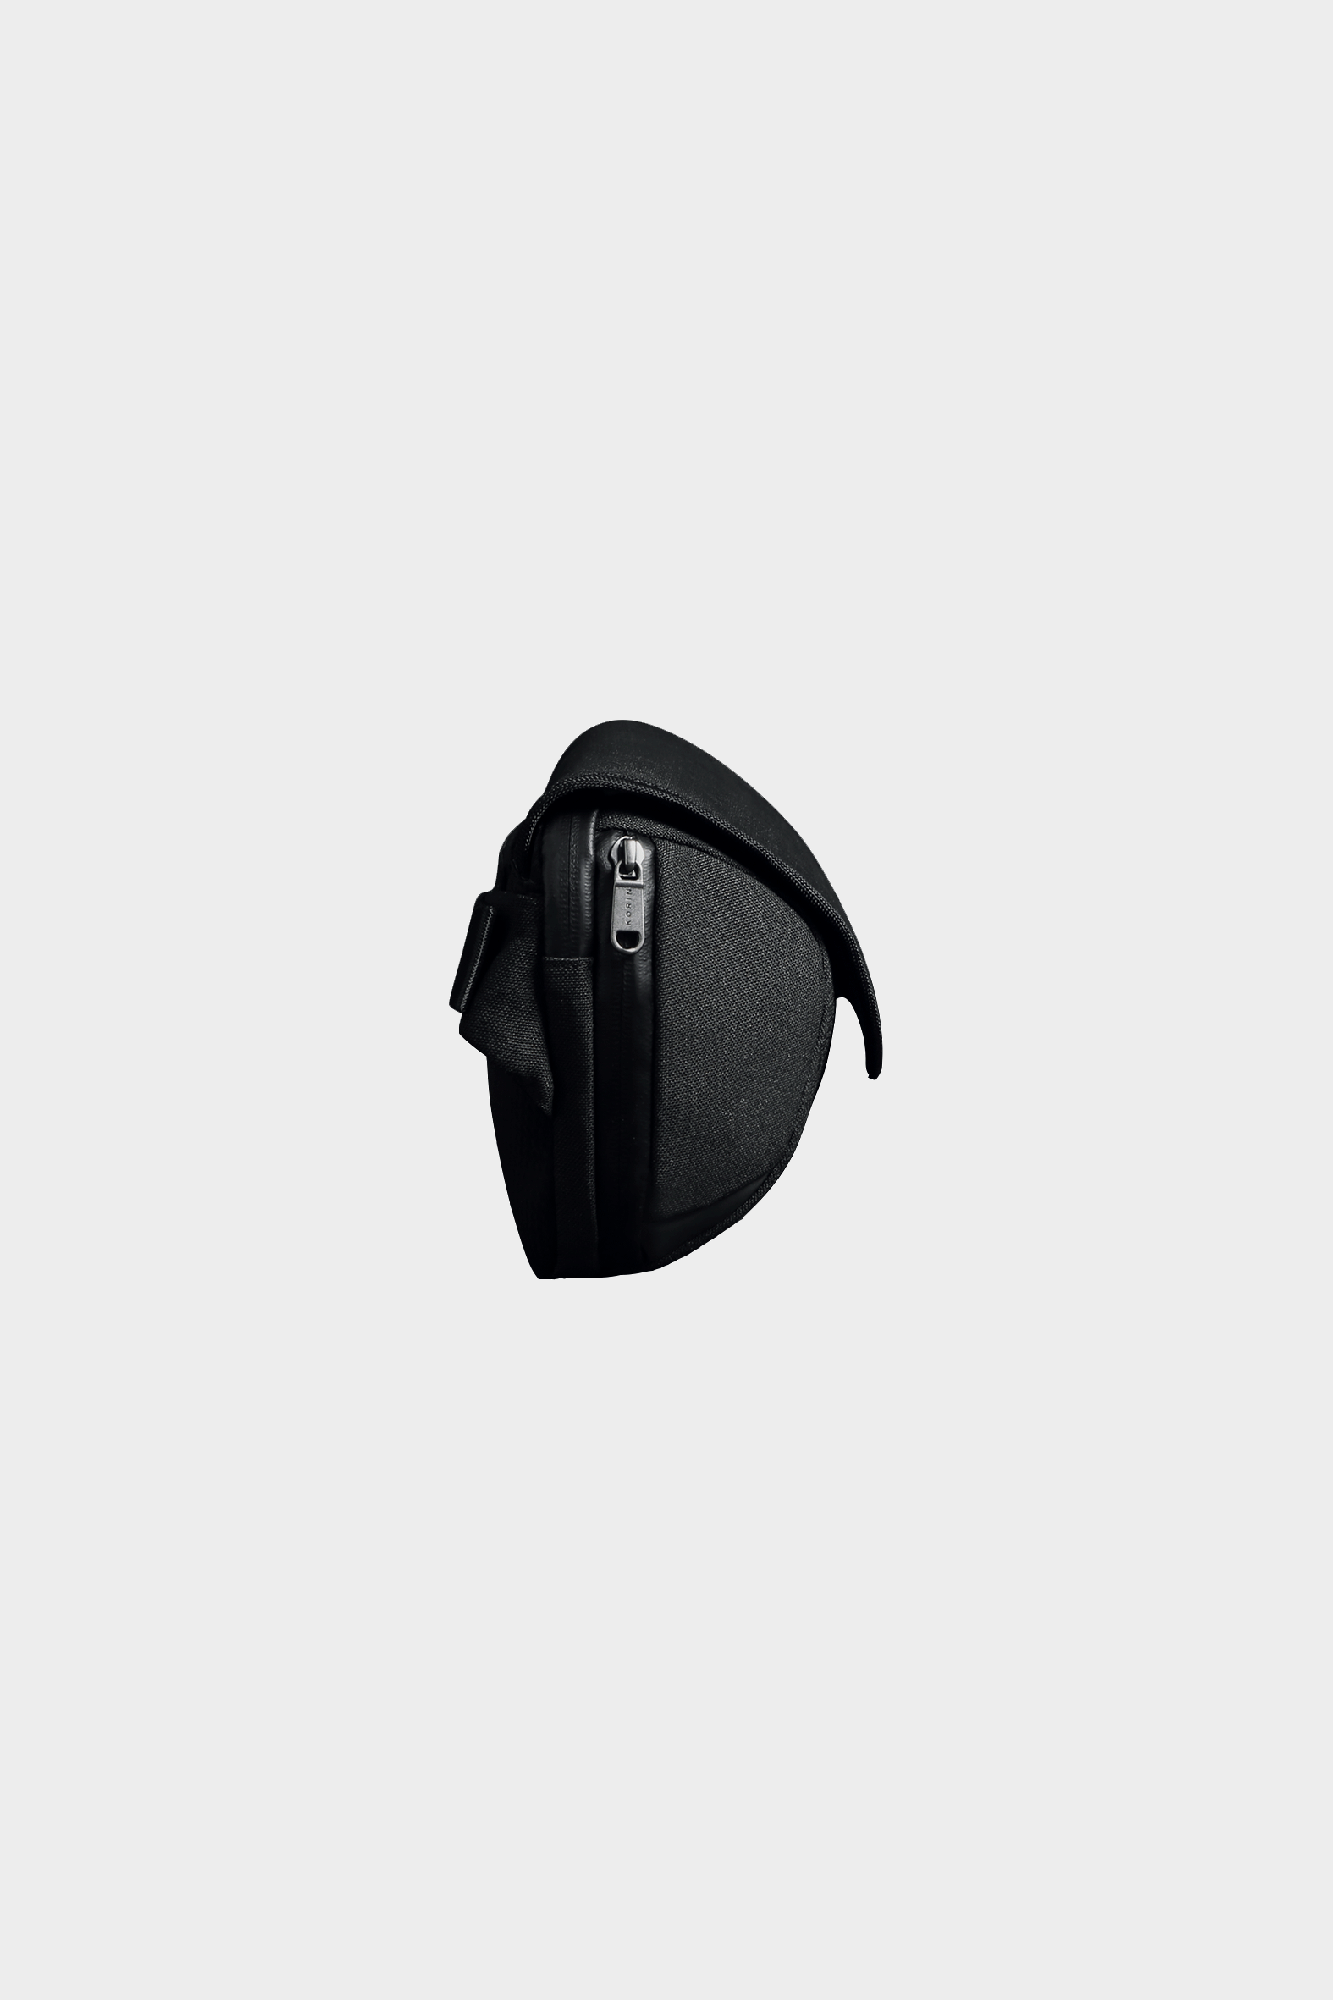 Поясная сумка унисекс Korin K6, черный